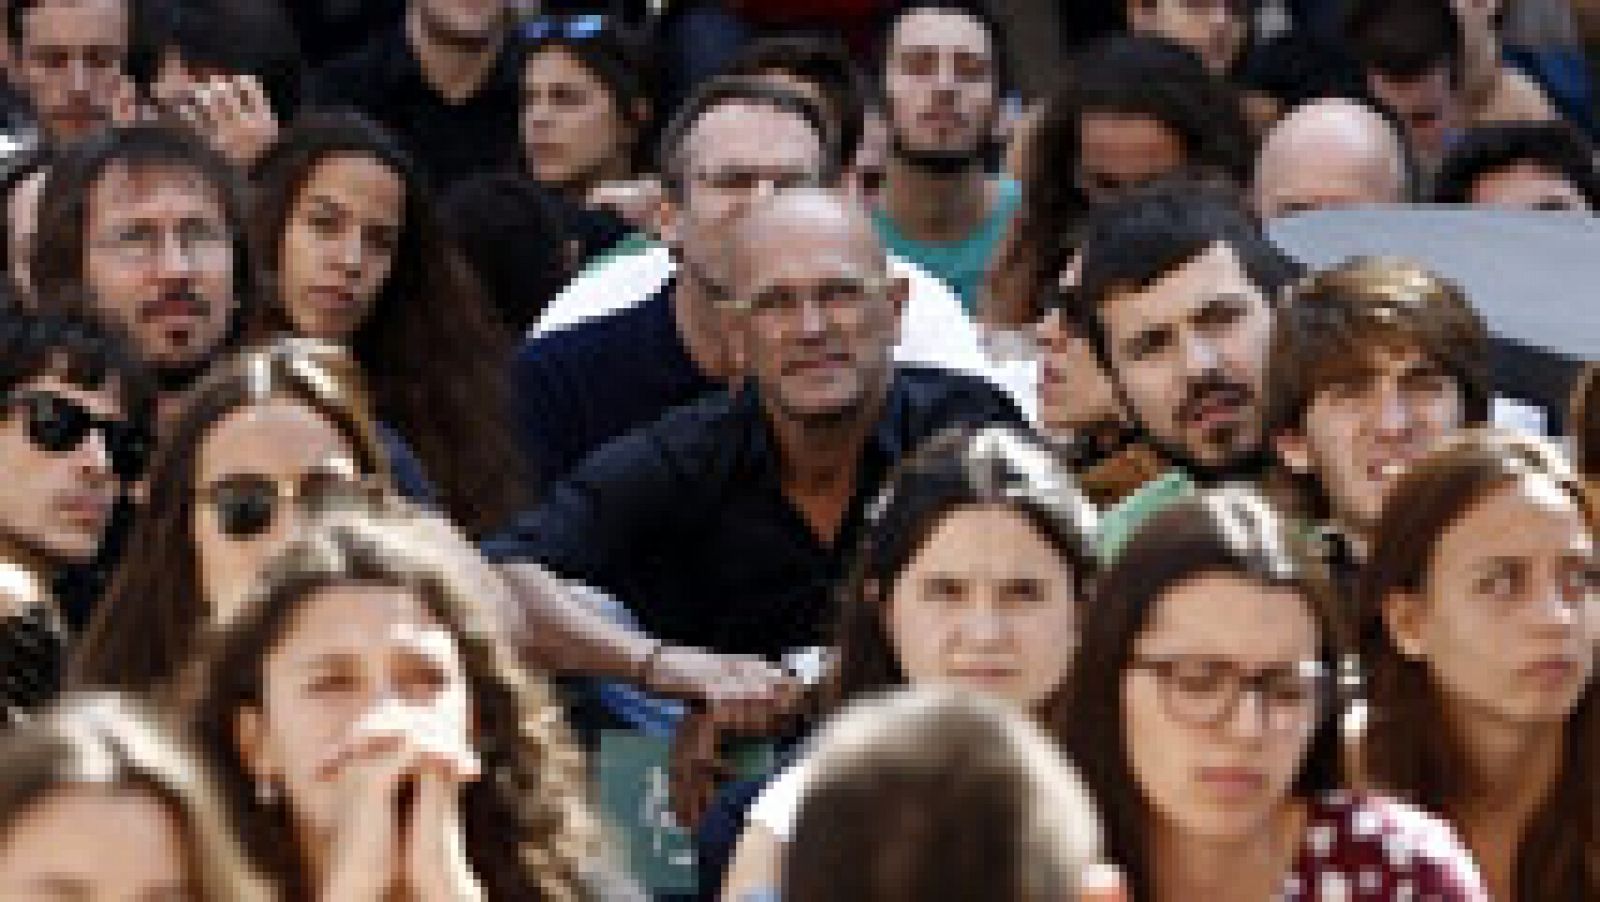 Elecciones Cataluña 27S: Junts pel Sí niega que haya "adoctrinamiento" nacionalista en las escuelas